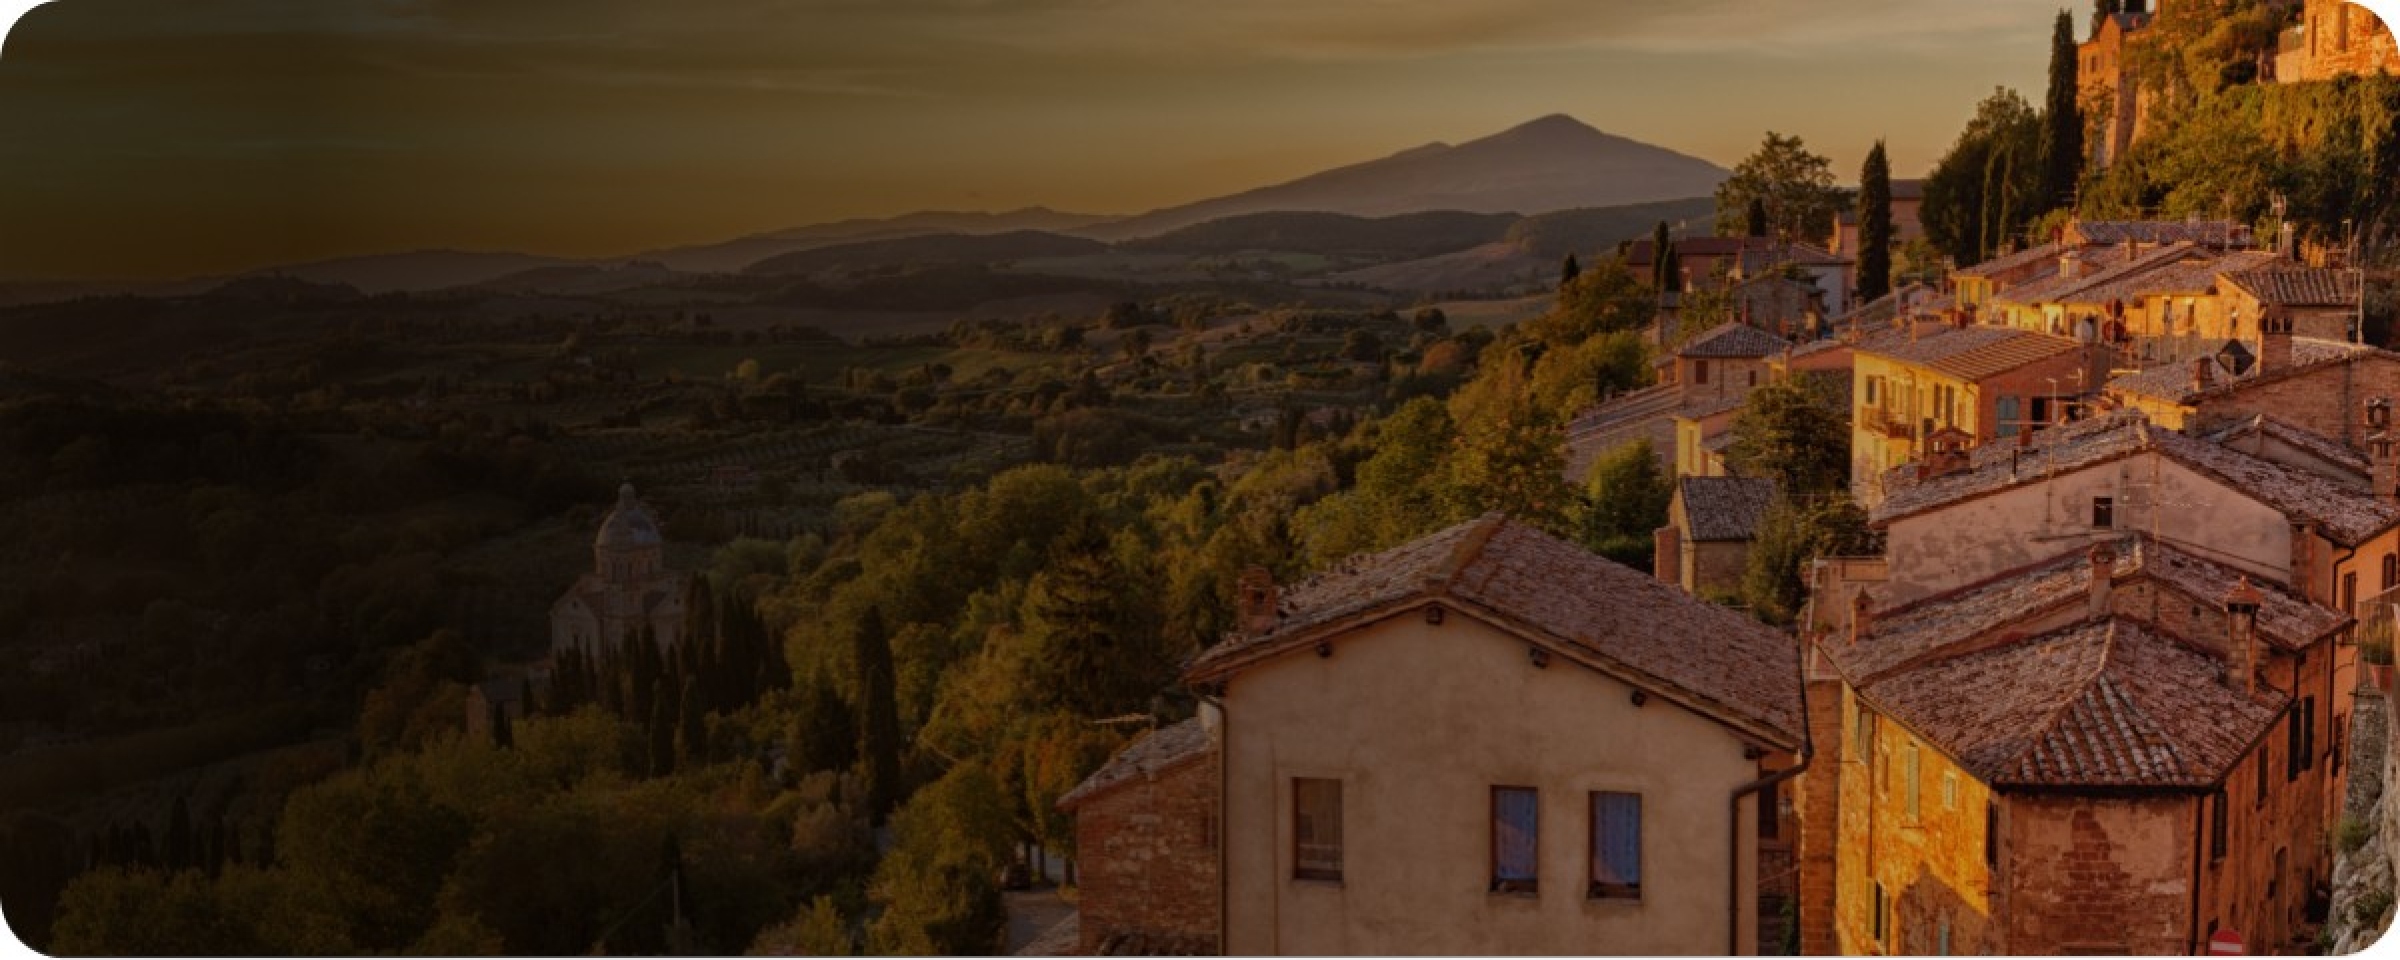 Fotografia dall'alto che inquadra i tetti di un paese italiano durante un tramonto